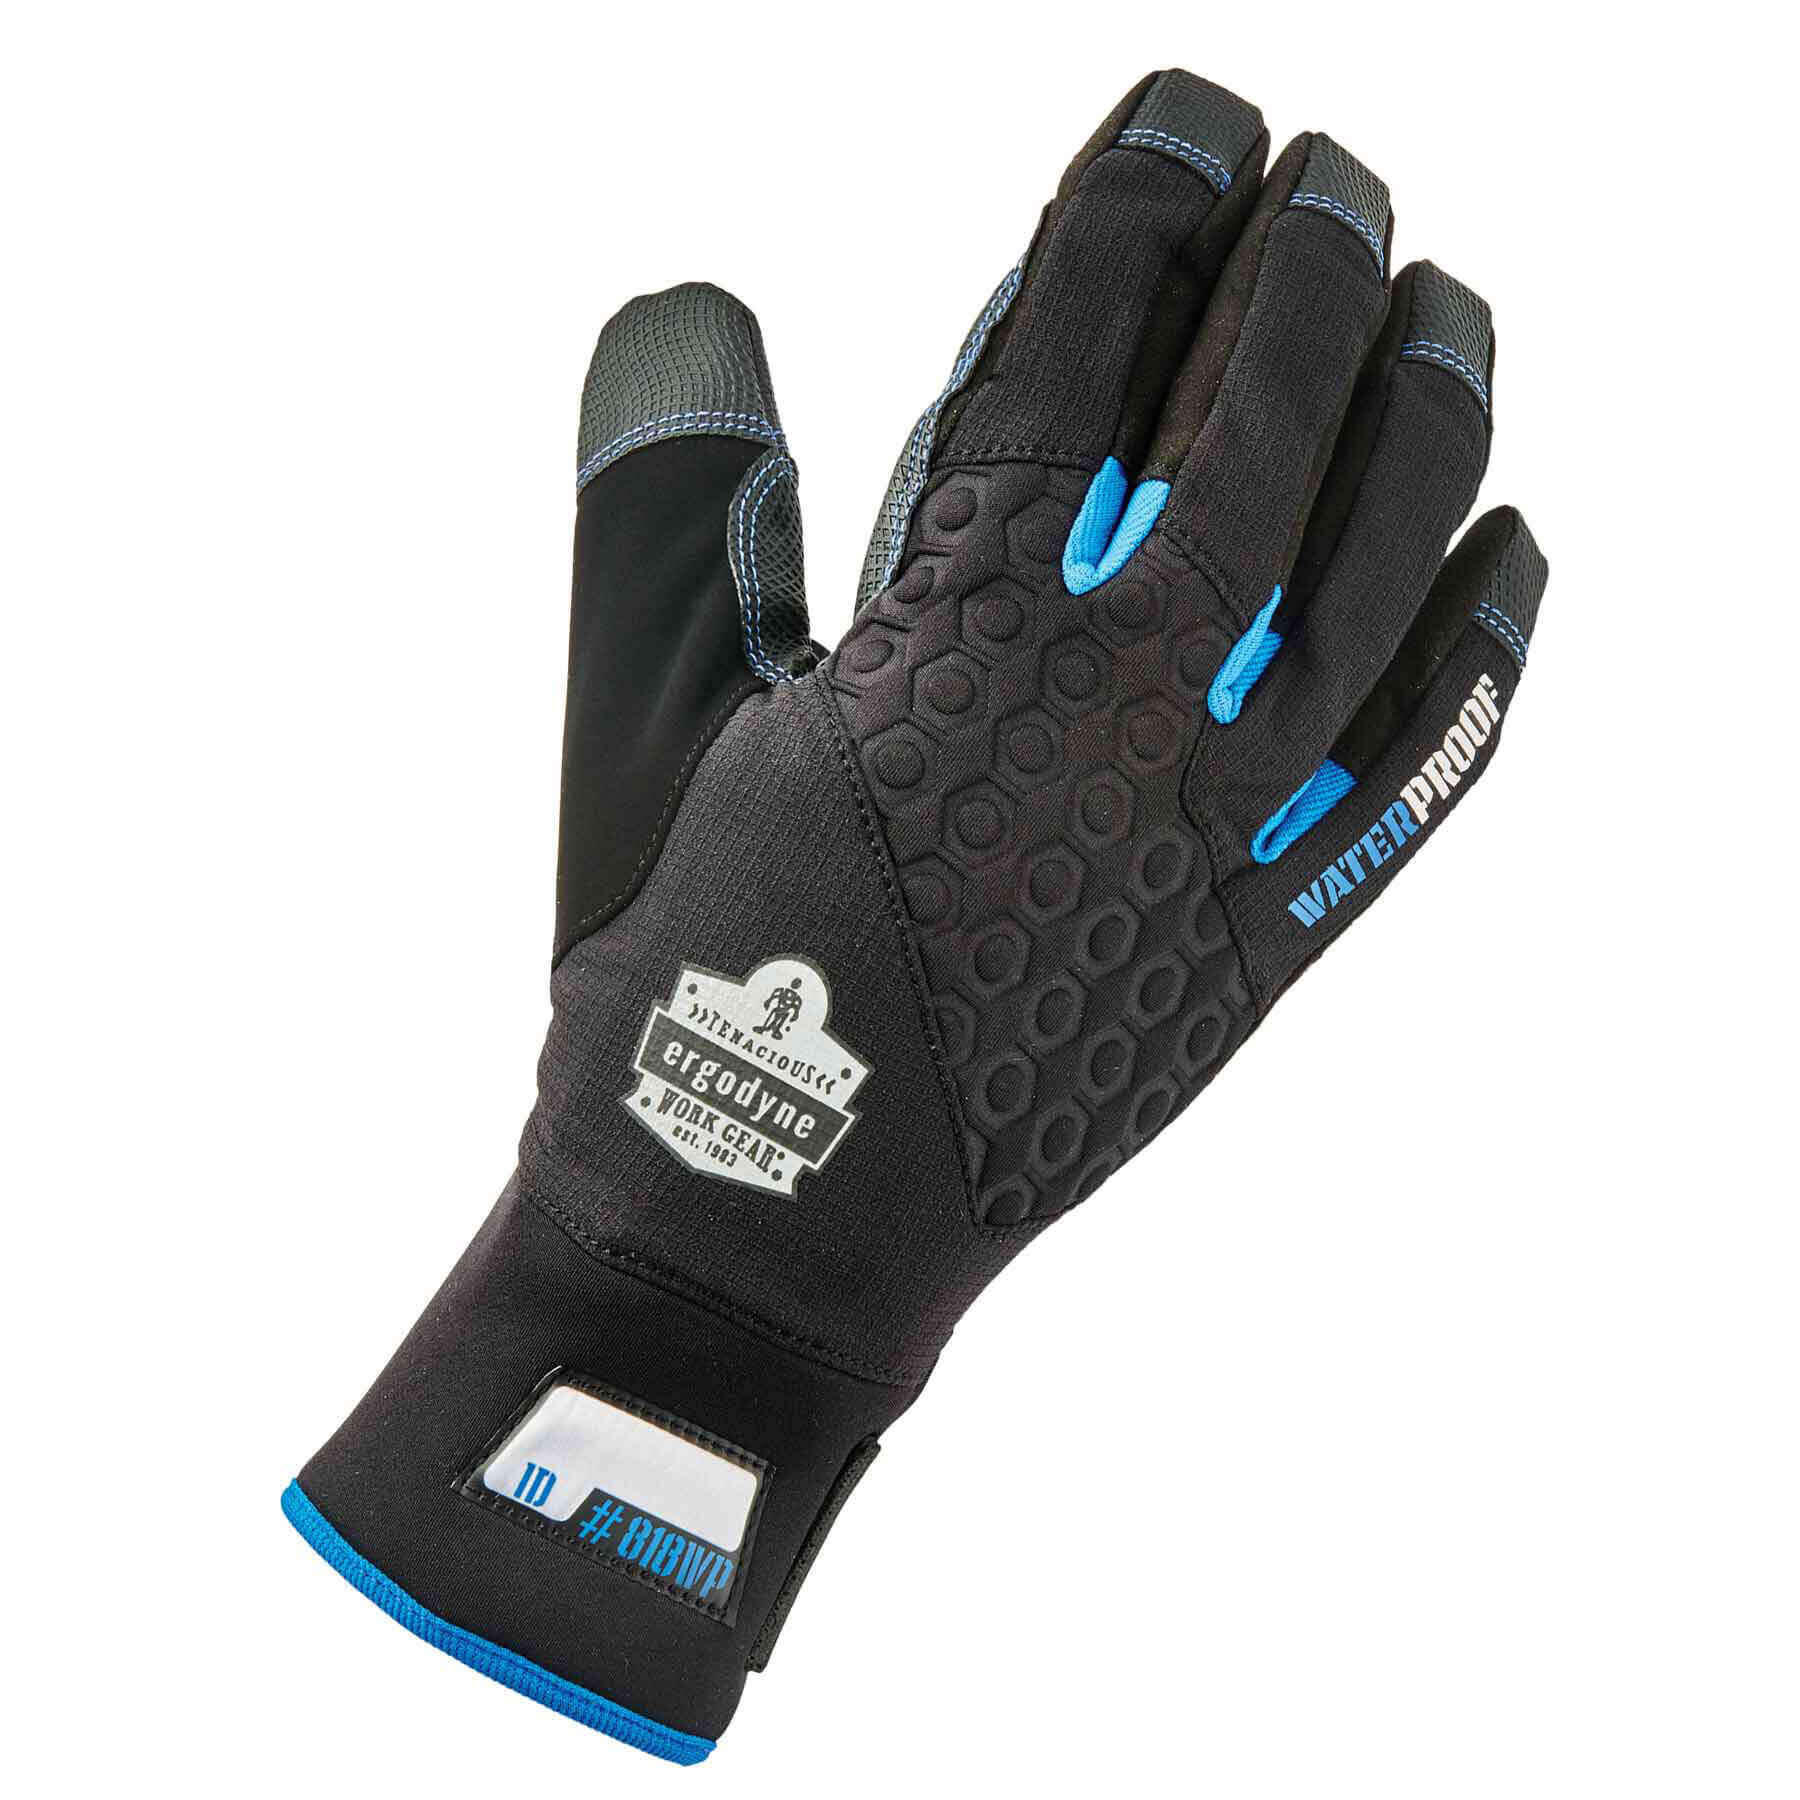 Performance Thermal Waterproof Winter Work Gloves